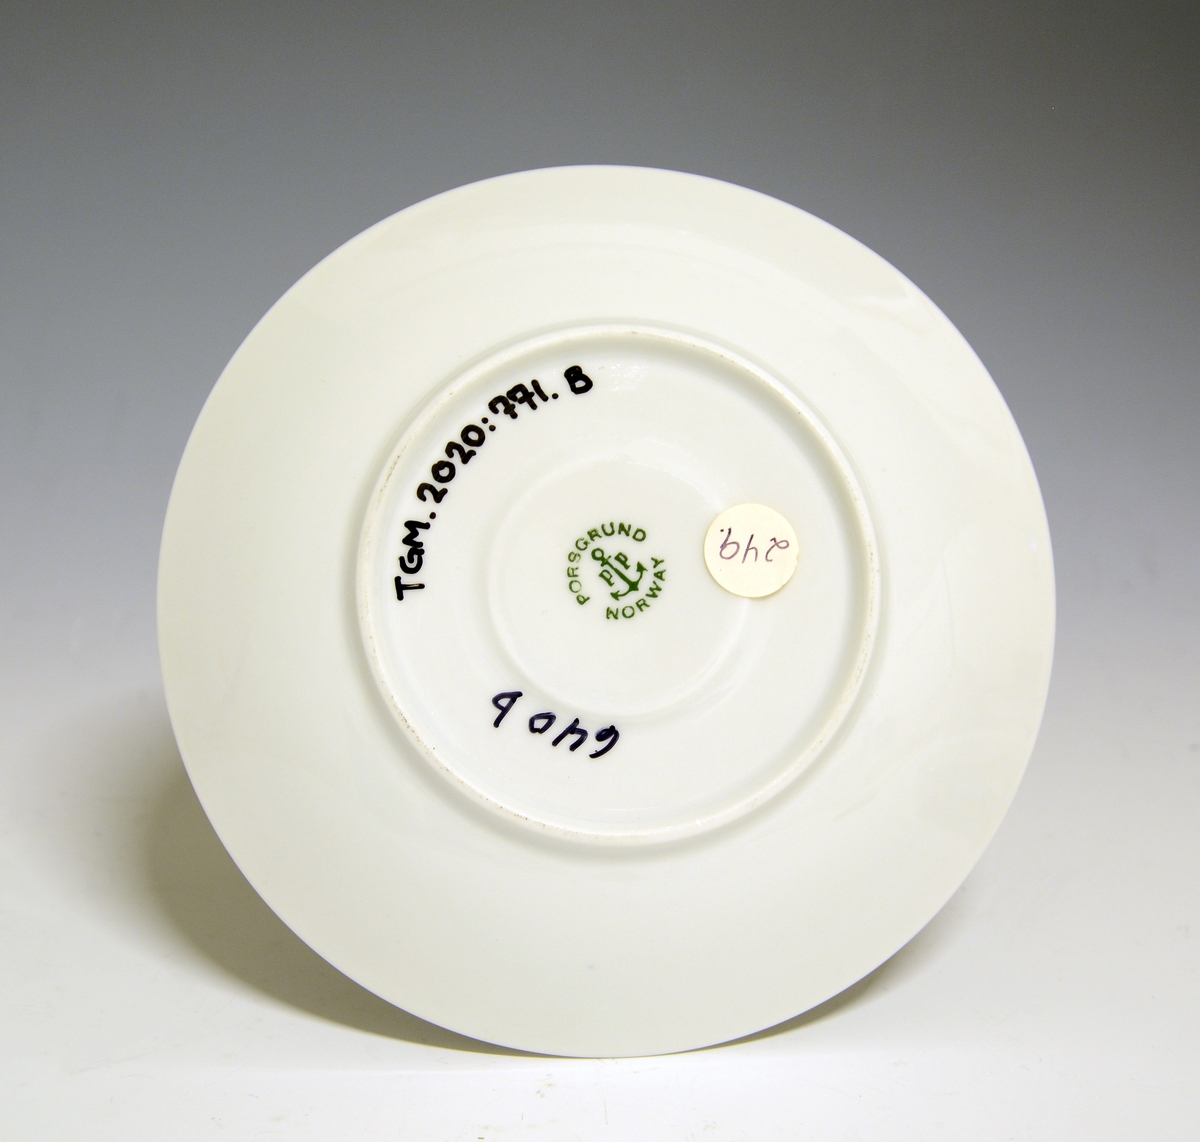 Kaffeskål av porselen. 
Modell: Jubileum, formgitt av Eystein Sandnes i 1959.